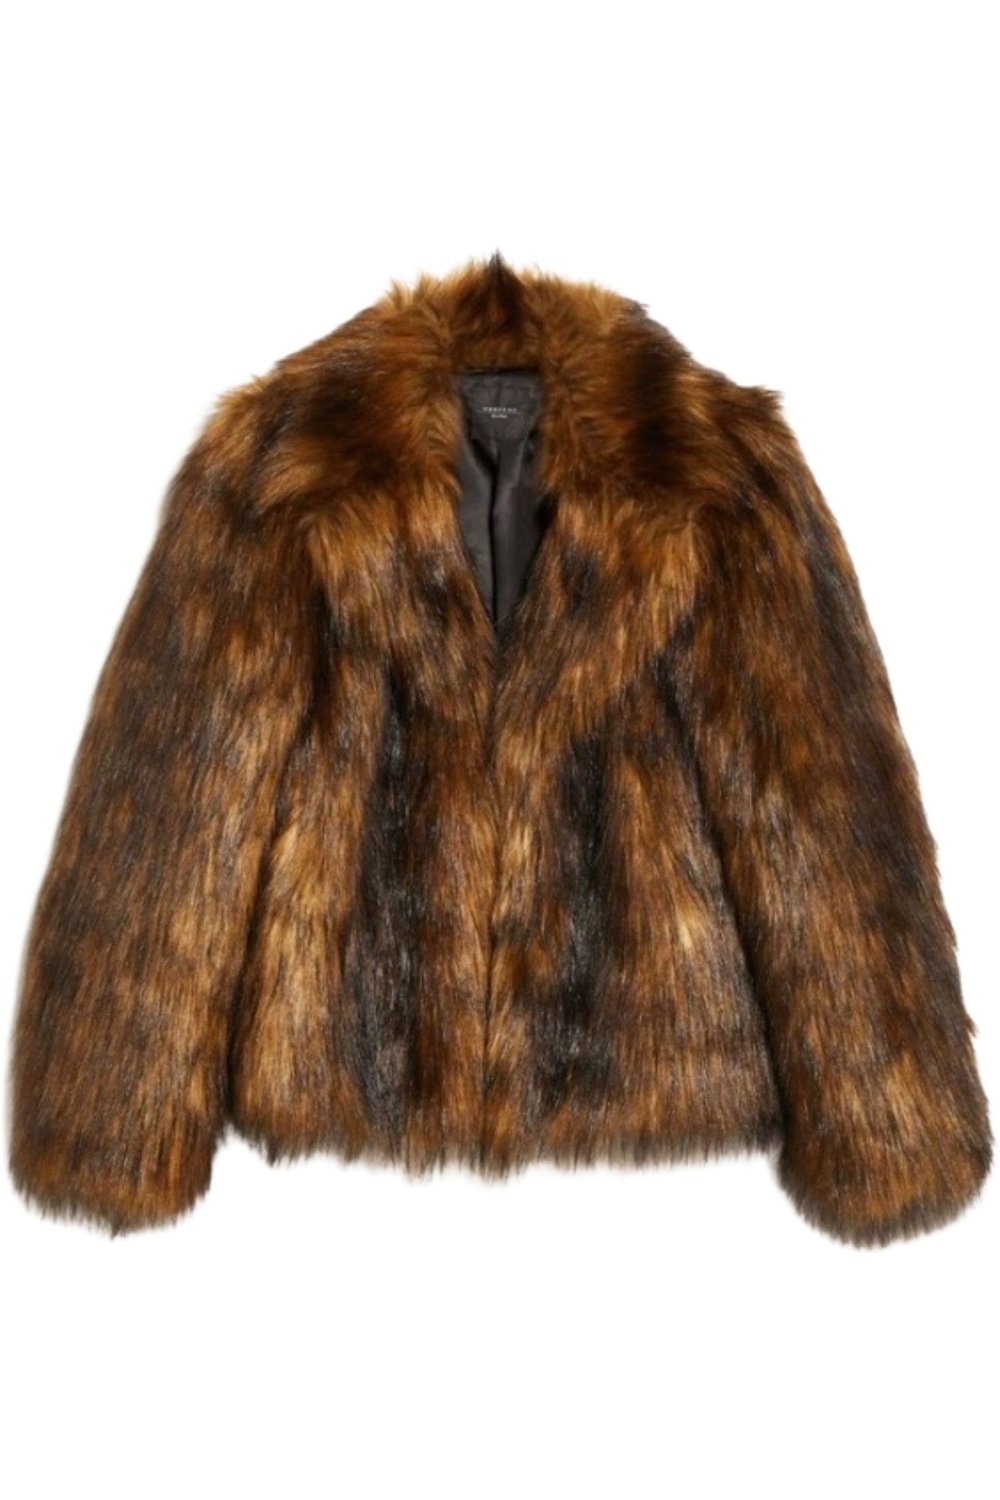  Max Mara  Fluffy Fabric Short Heavy Jacket  $995.00 